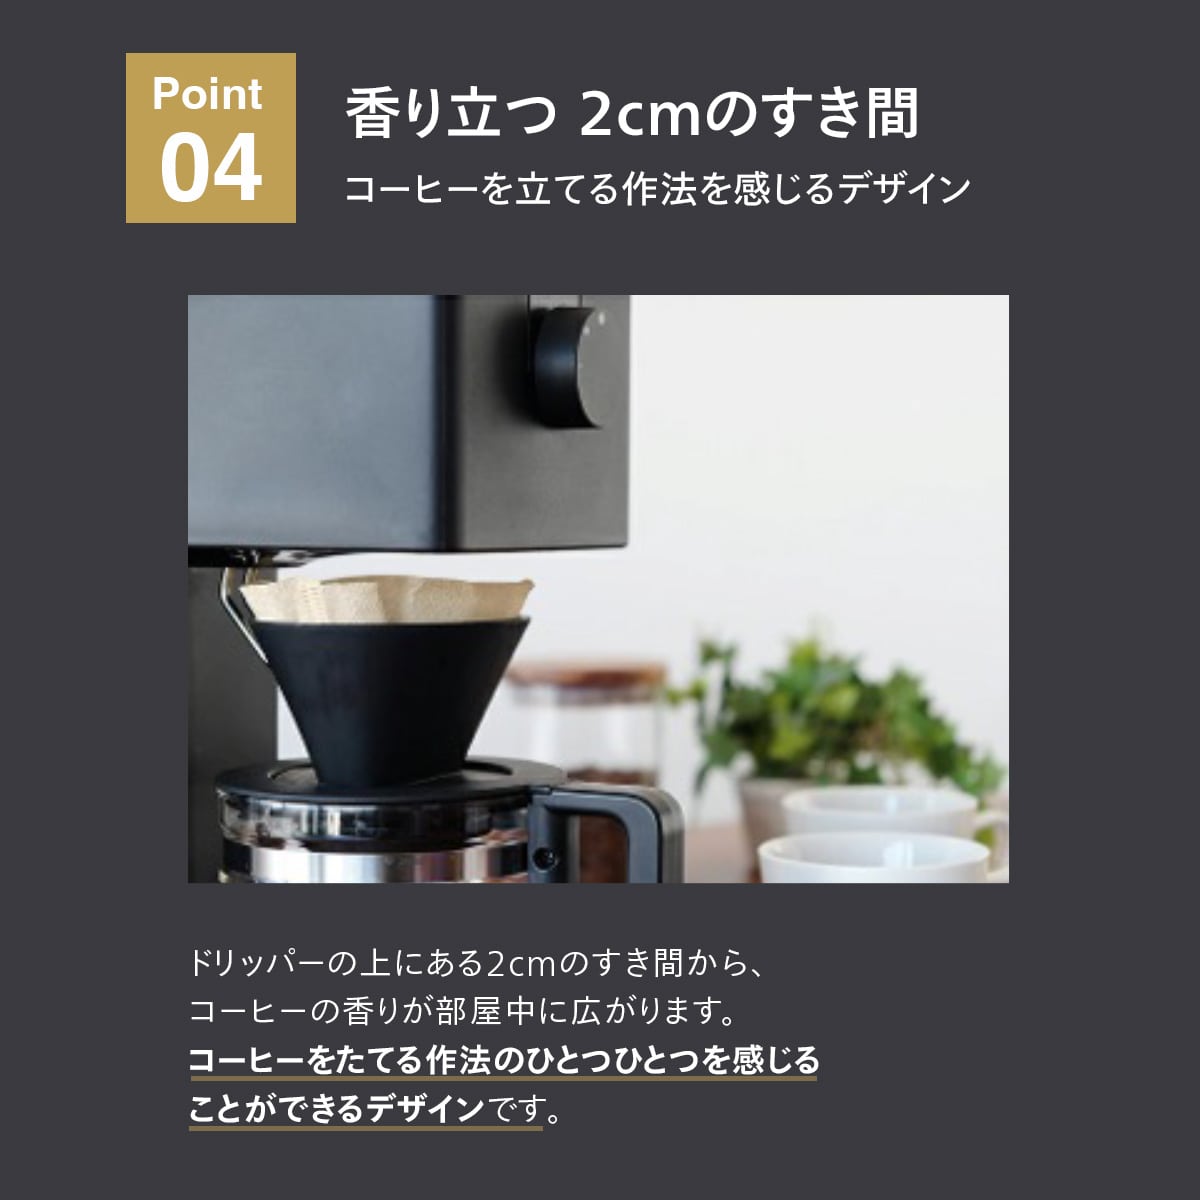 ツインバード 日本製 全自動 コーヒーメーカー 6杯用 雪室珈琲豆 3袋セット